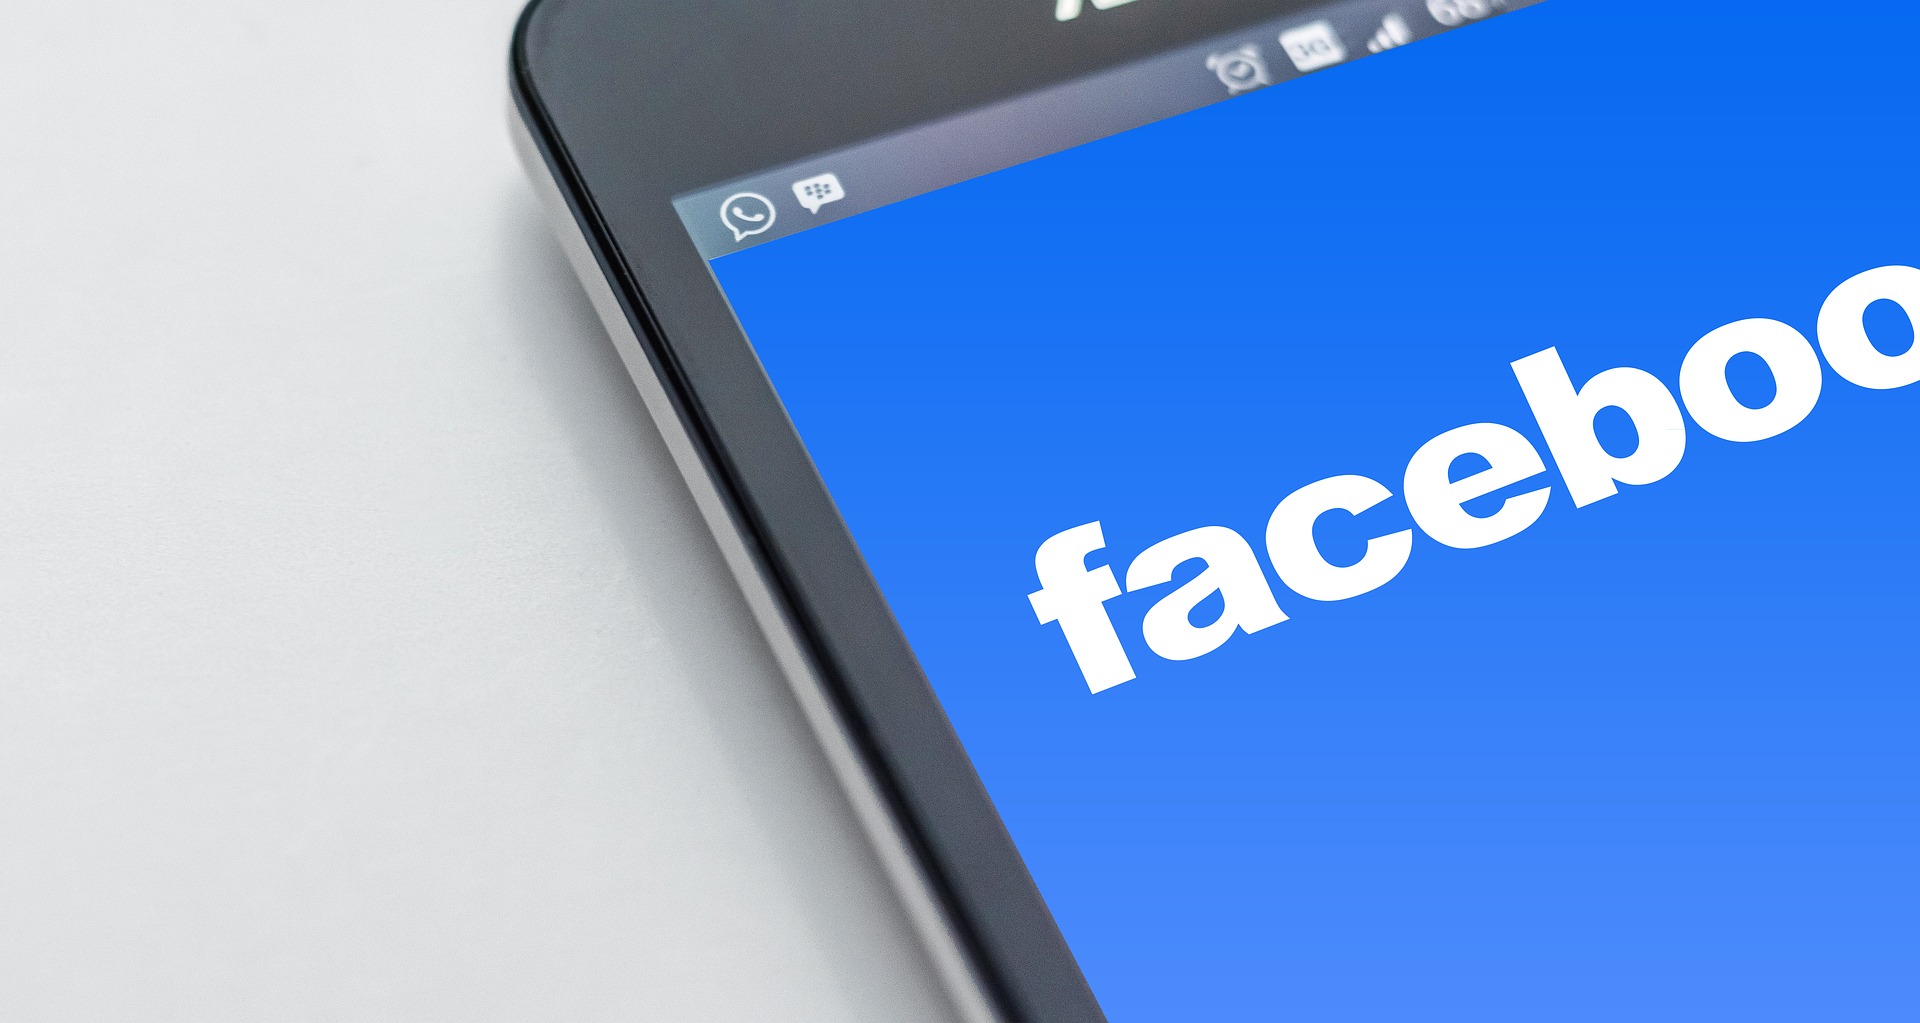 Приставы взыщут с Facebook 26 миллионов рублей